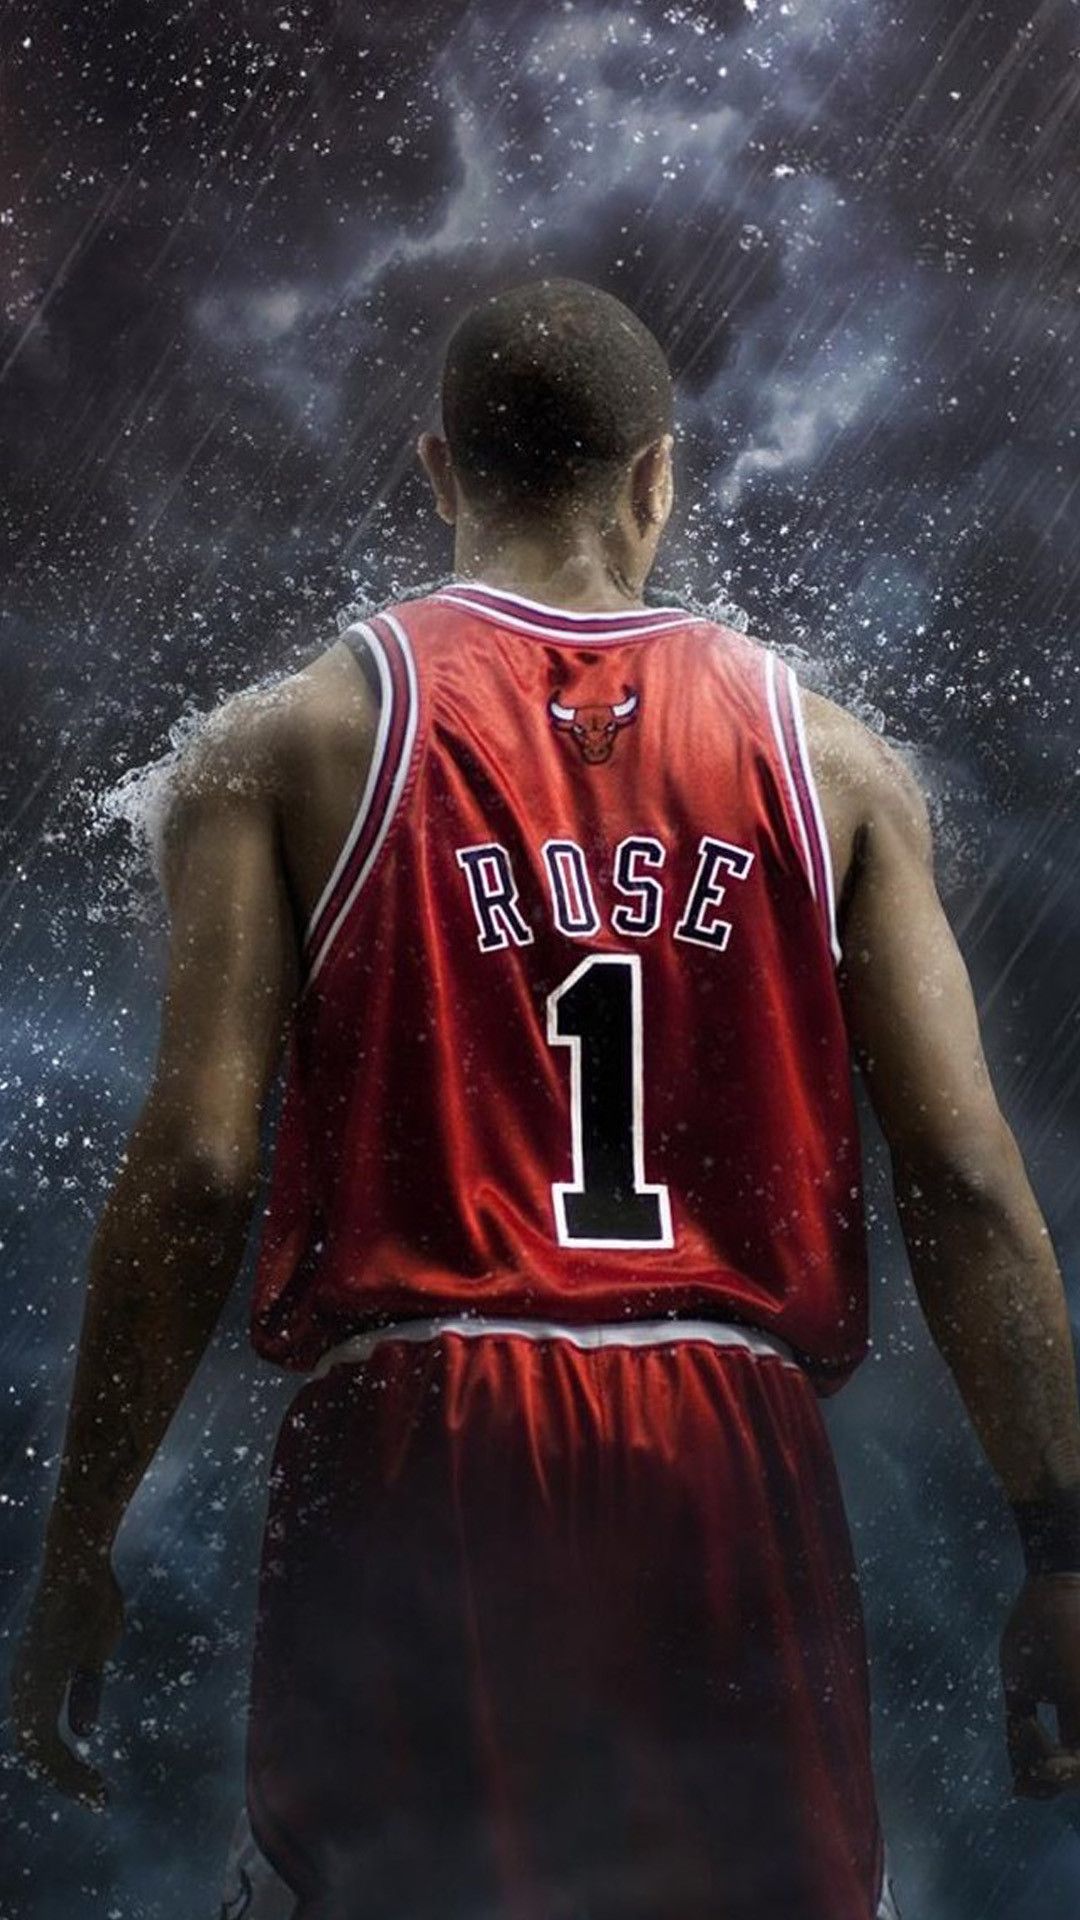 A man in red basketball uniform standing under rain - Basketball, NBA